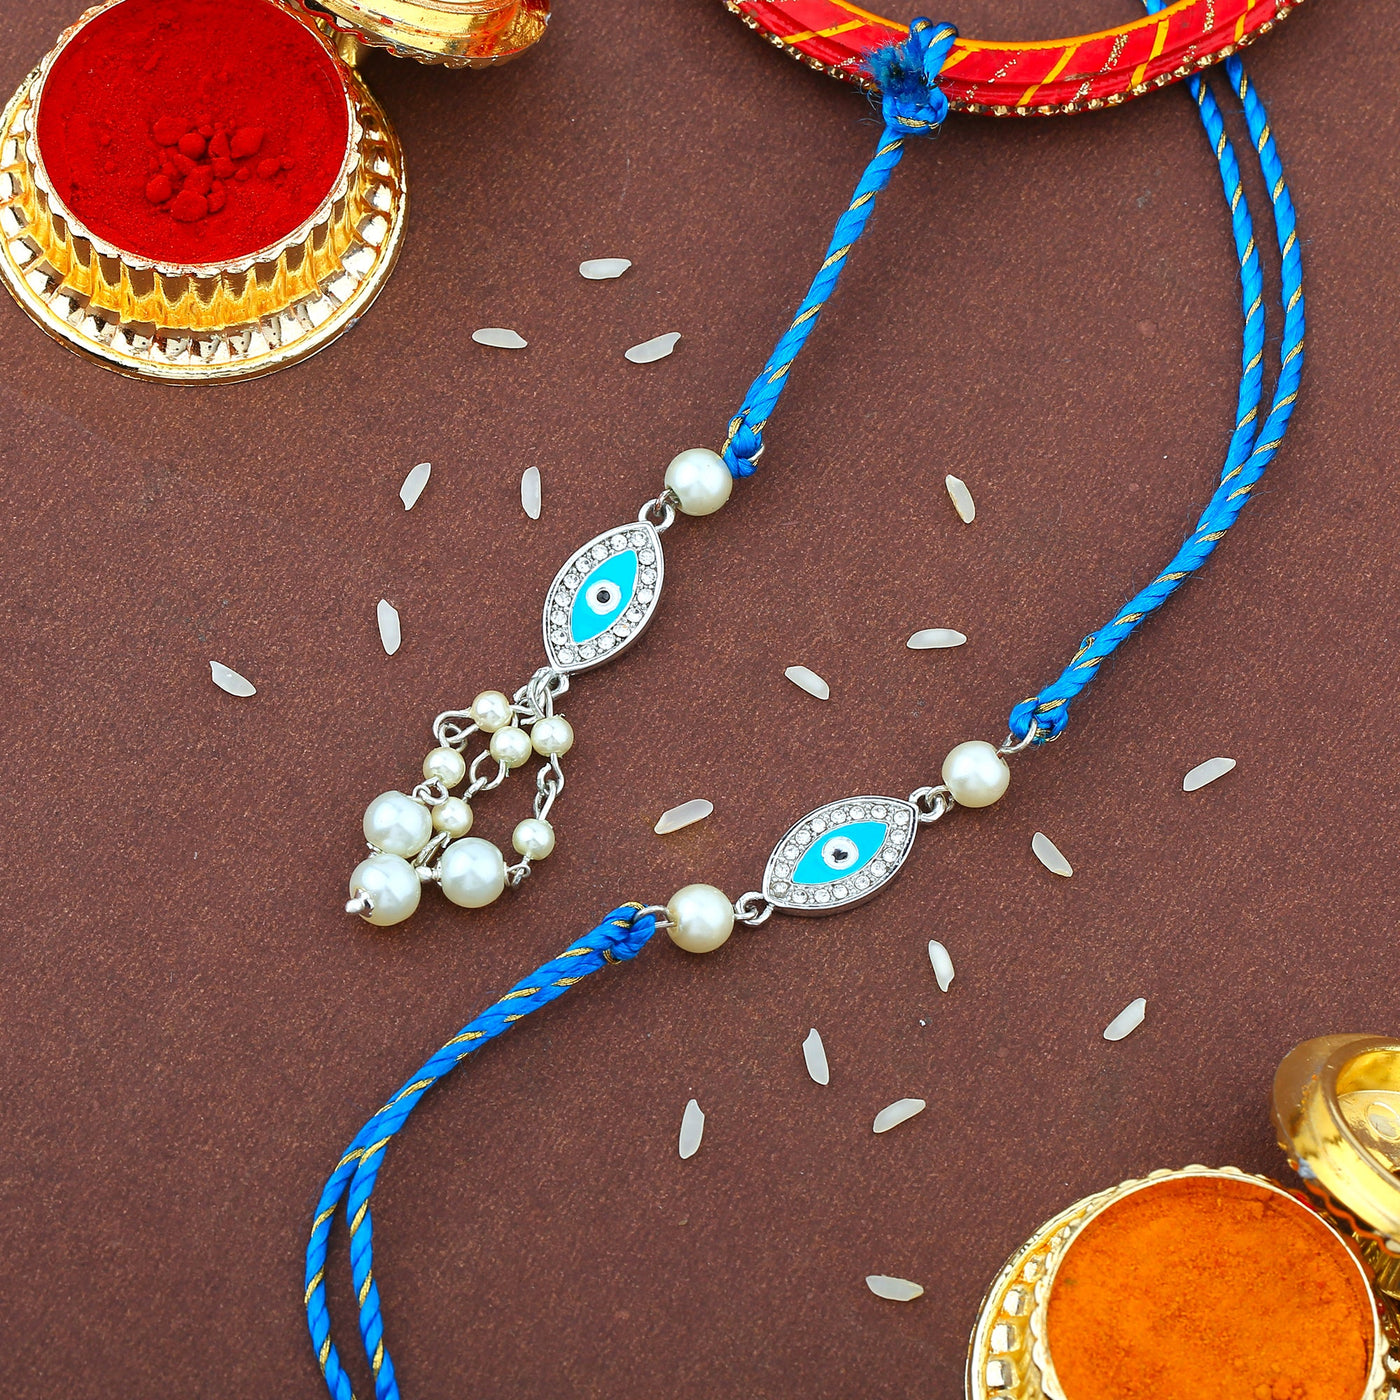 Estele Rhodium Plated Evil Eye Rakhi Set for Bhaiya Bhabhi with Blue Enamel and WhiteAustrian Crystals & Pearls with Fancy Silk Thread